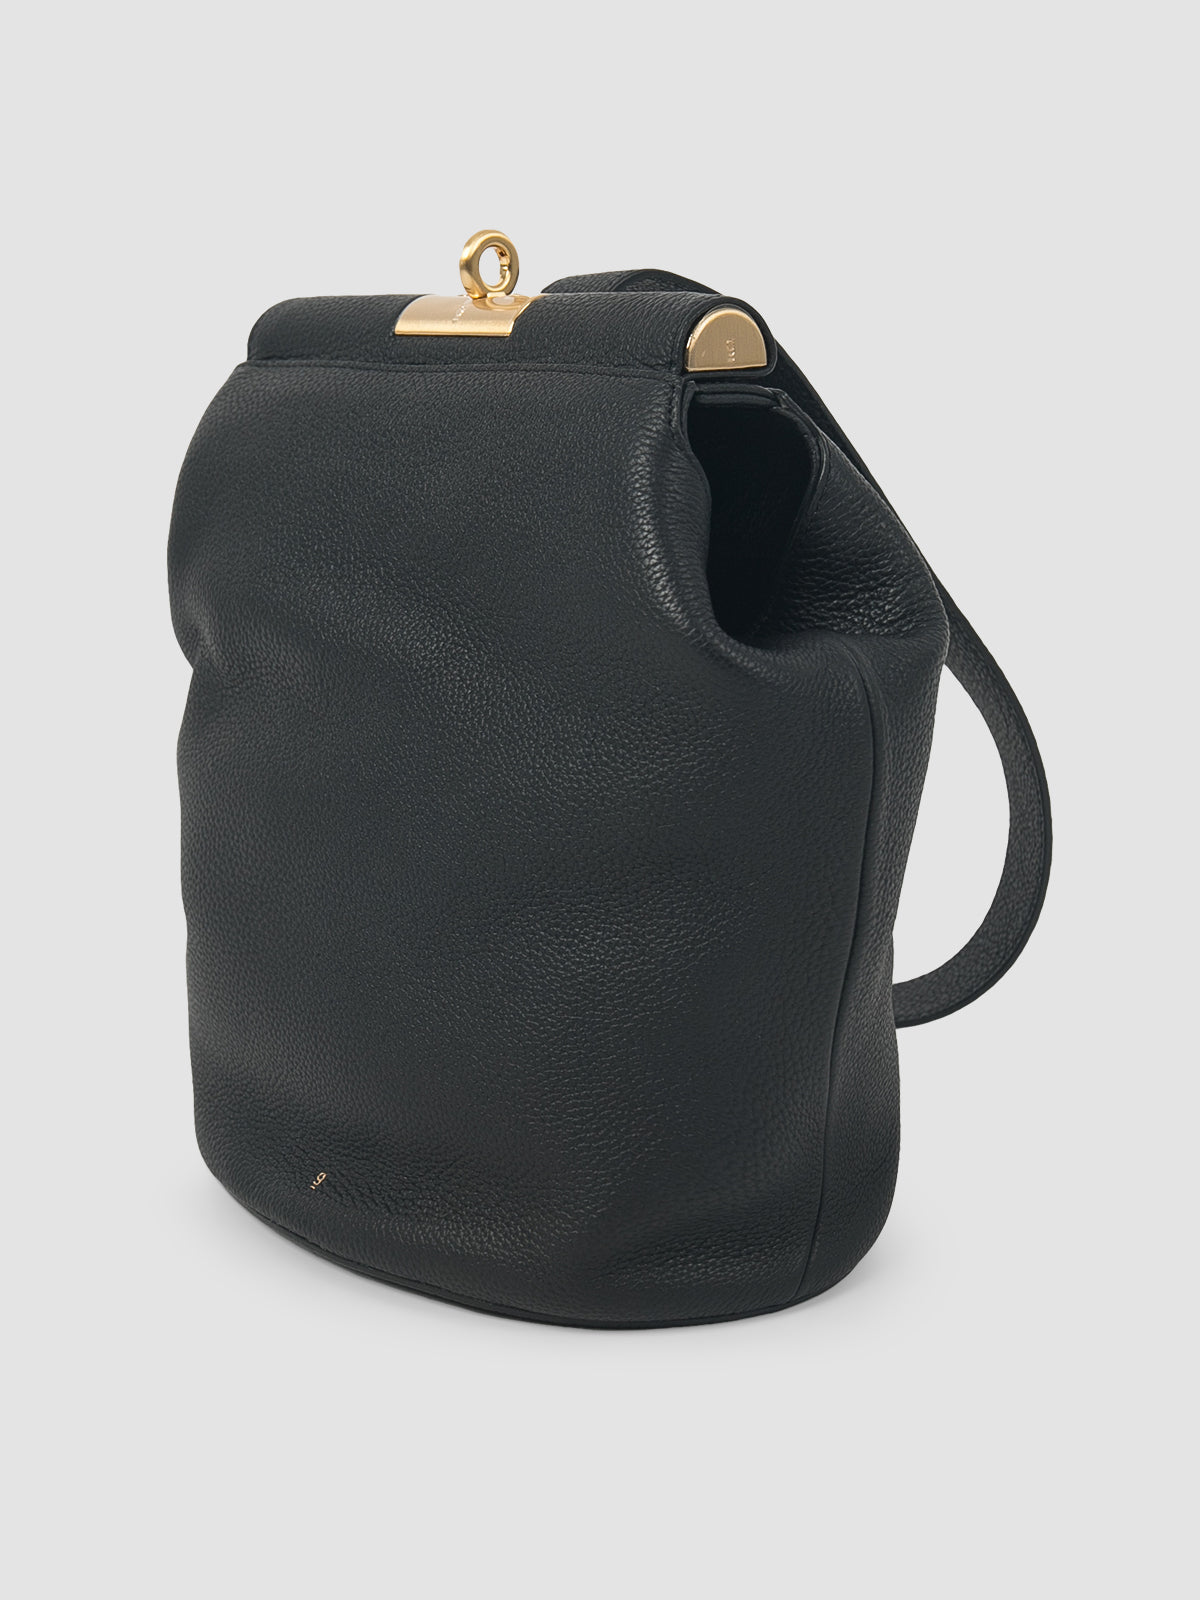 Black Lowa leather shoulder bag